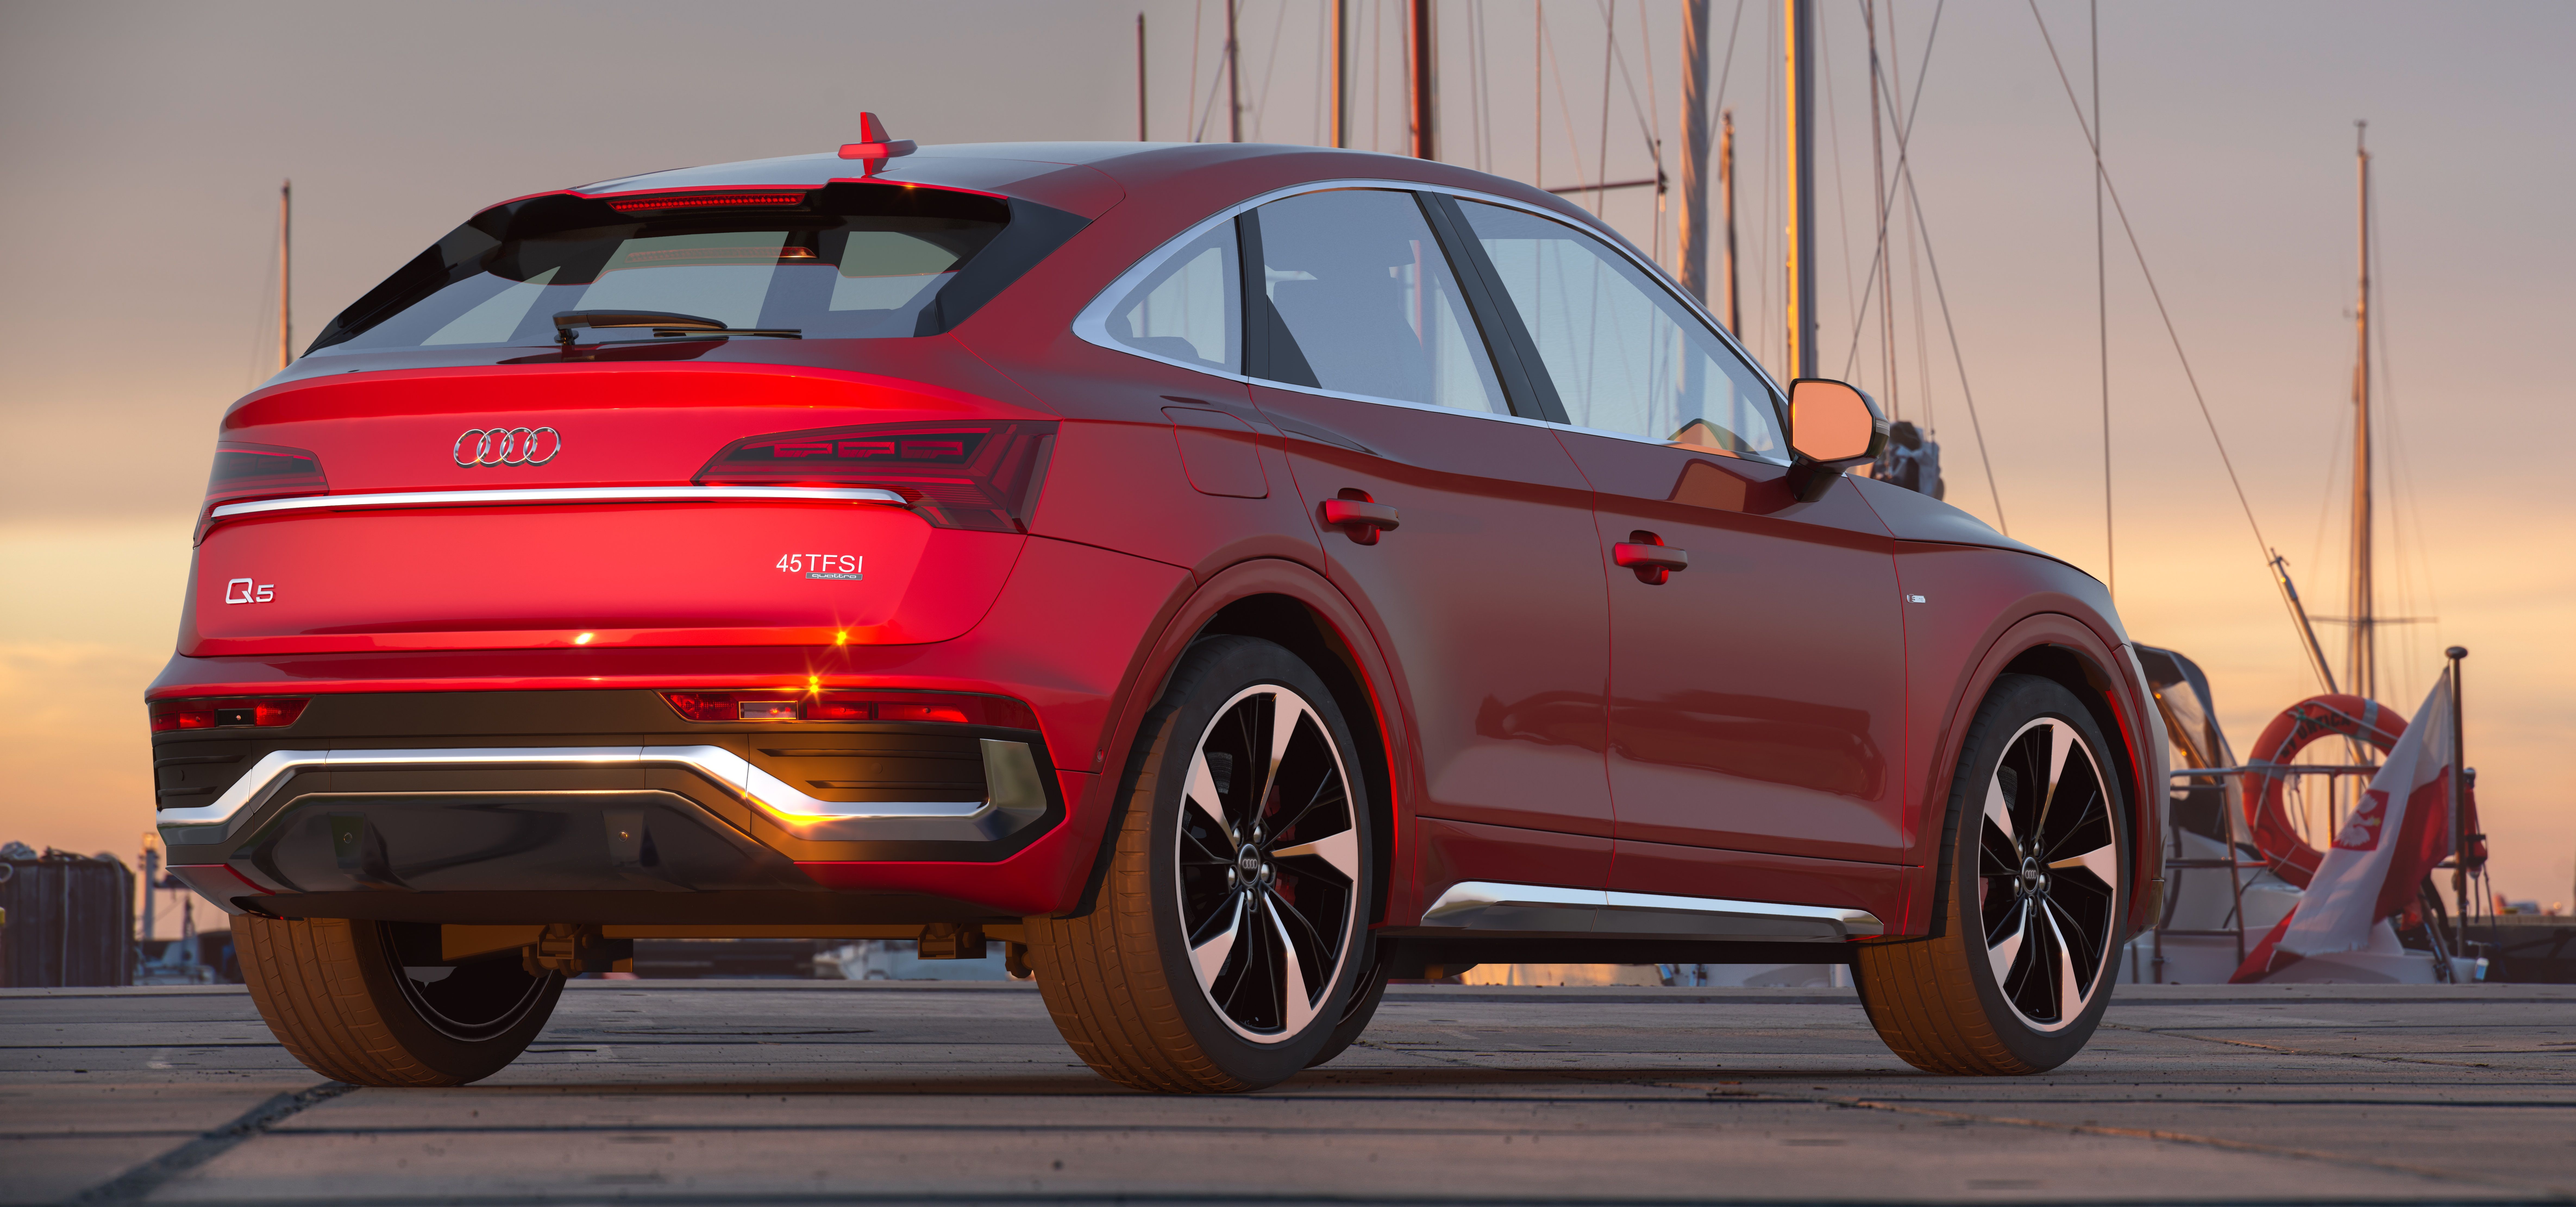 Audi noleggio lungo termine